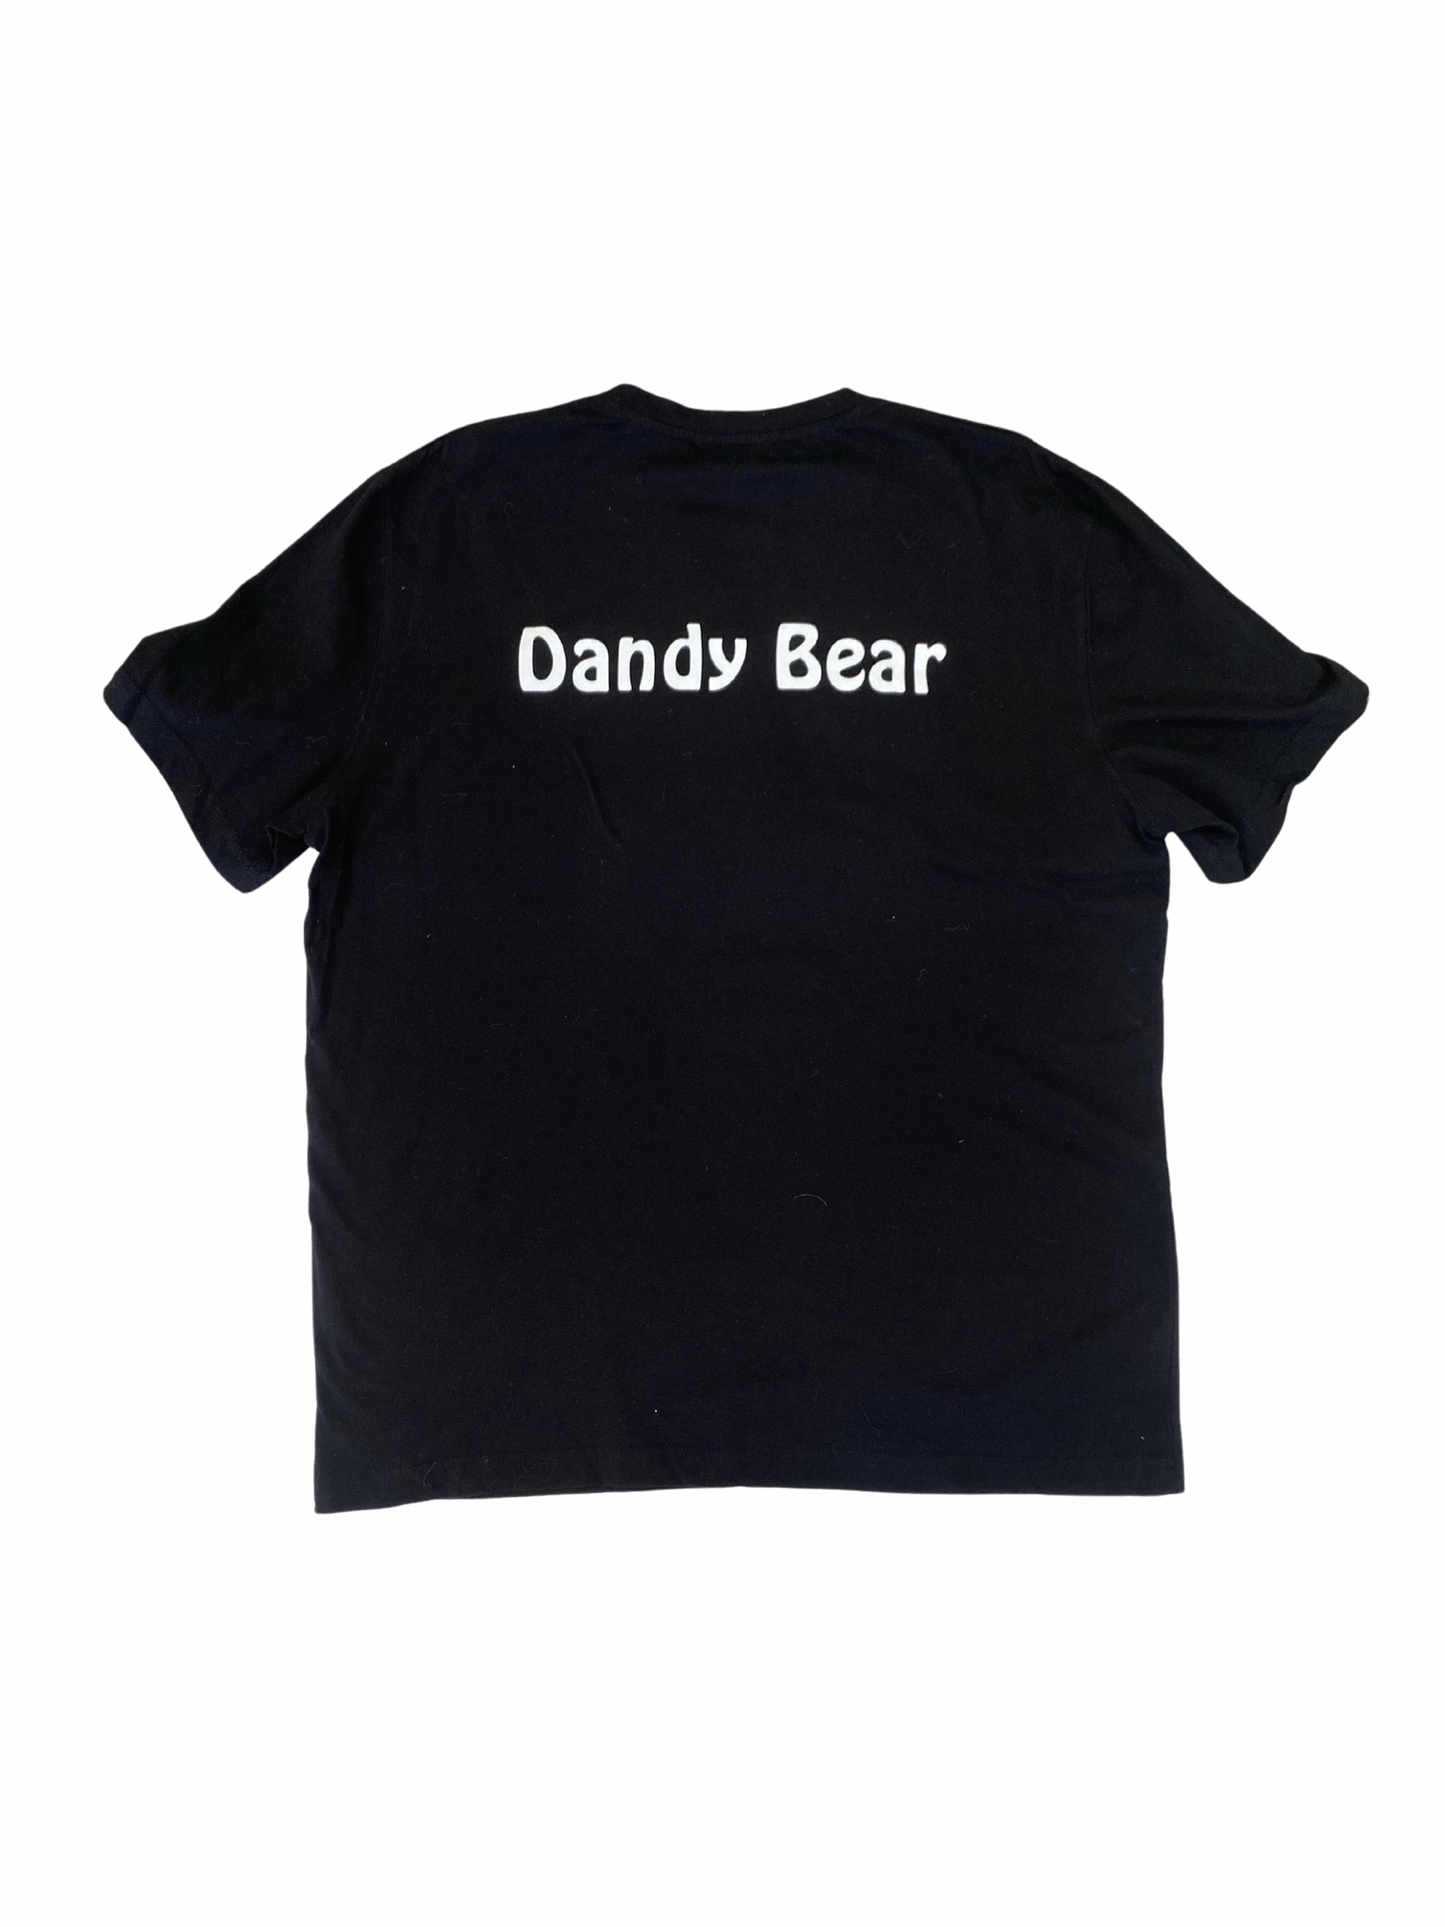 Dandy Bear “Coming Soon” Laser Tag T-shirt